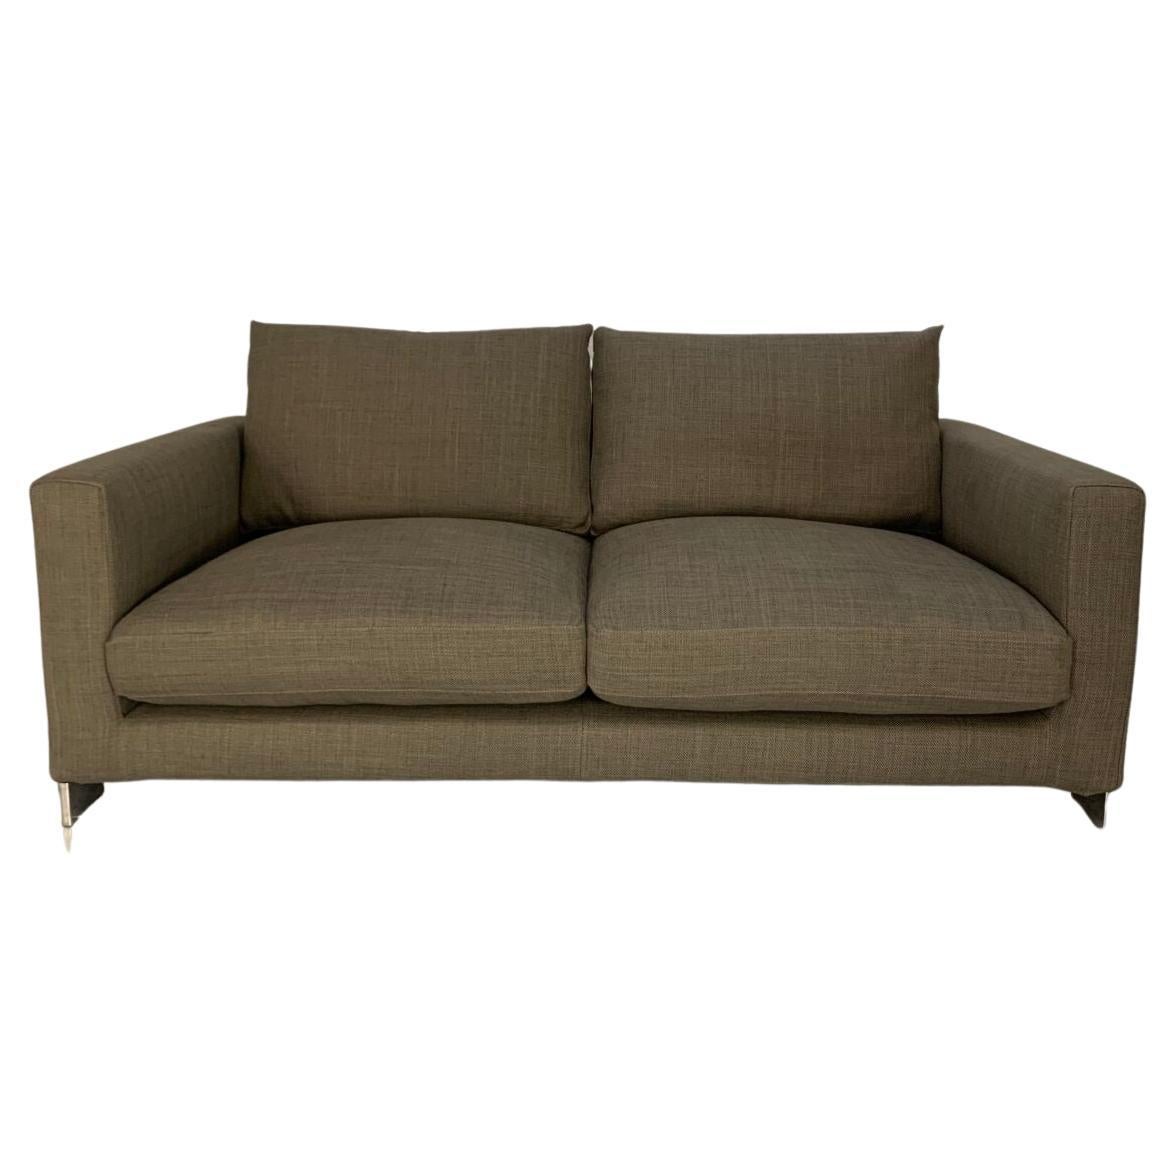 Molteni & C "Reversi" 2-Seat Sofa - In Woven Linen